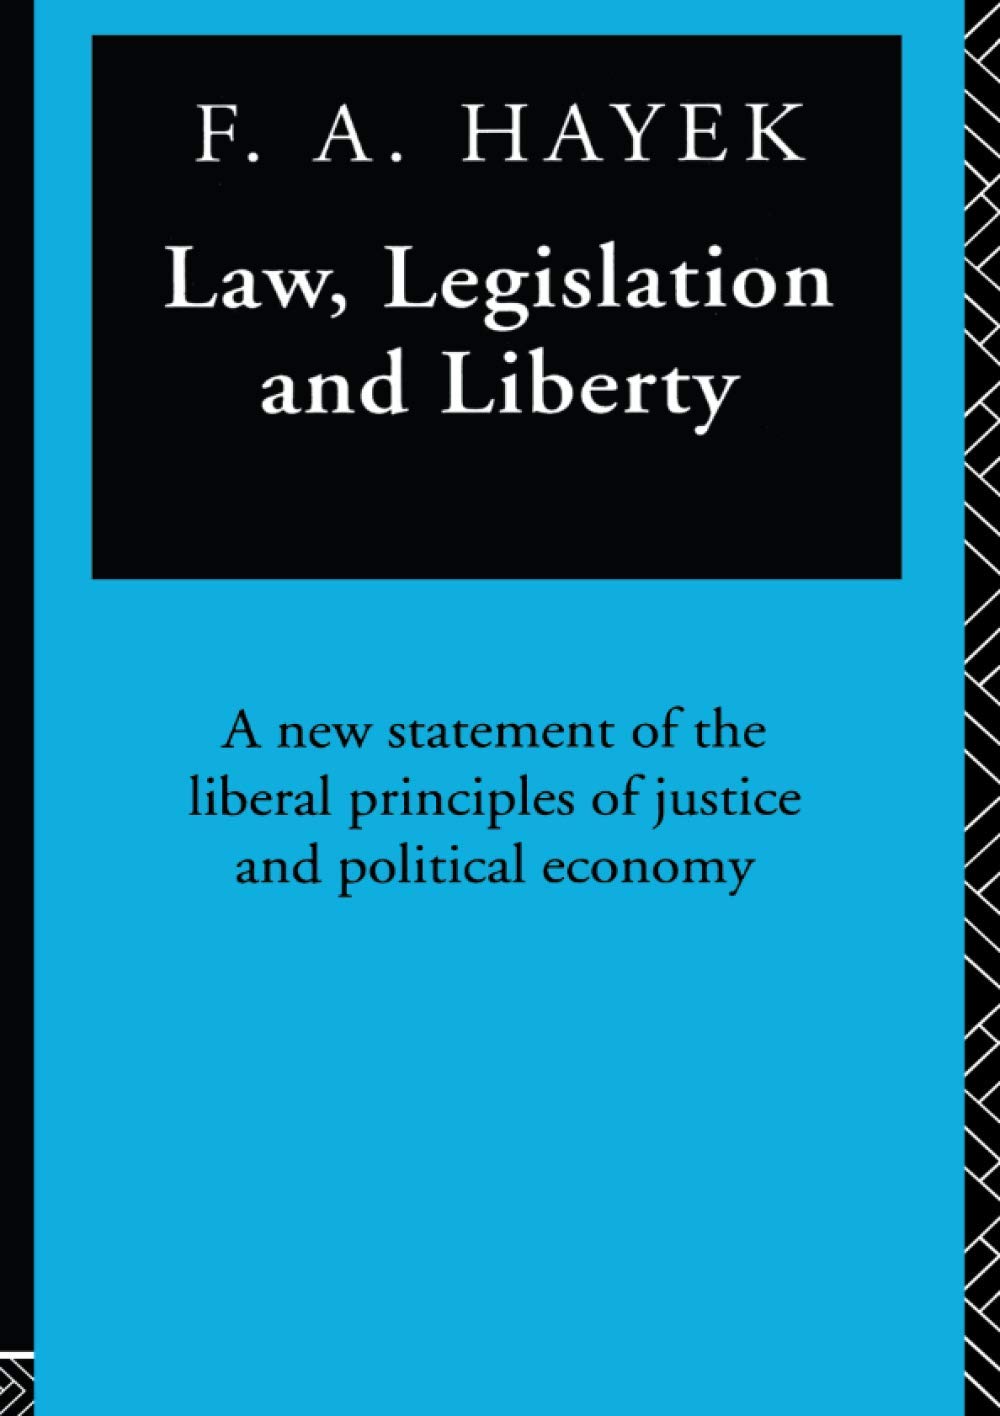 Law, Legislation and Liberty : A New Statement of the Liberal Principles of Justice and Political Economy ร้านหนังสือและสิ่งของ เป็นร้านหนังสือภาษาอังกฤษหายาก และร้านกาแฟ หรือ บุ๊คคาเฟ่ ตั้งอยู่สุขุมวิท กรุงเทพ